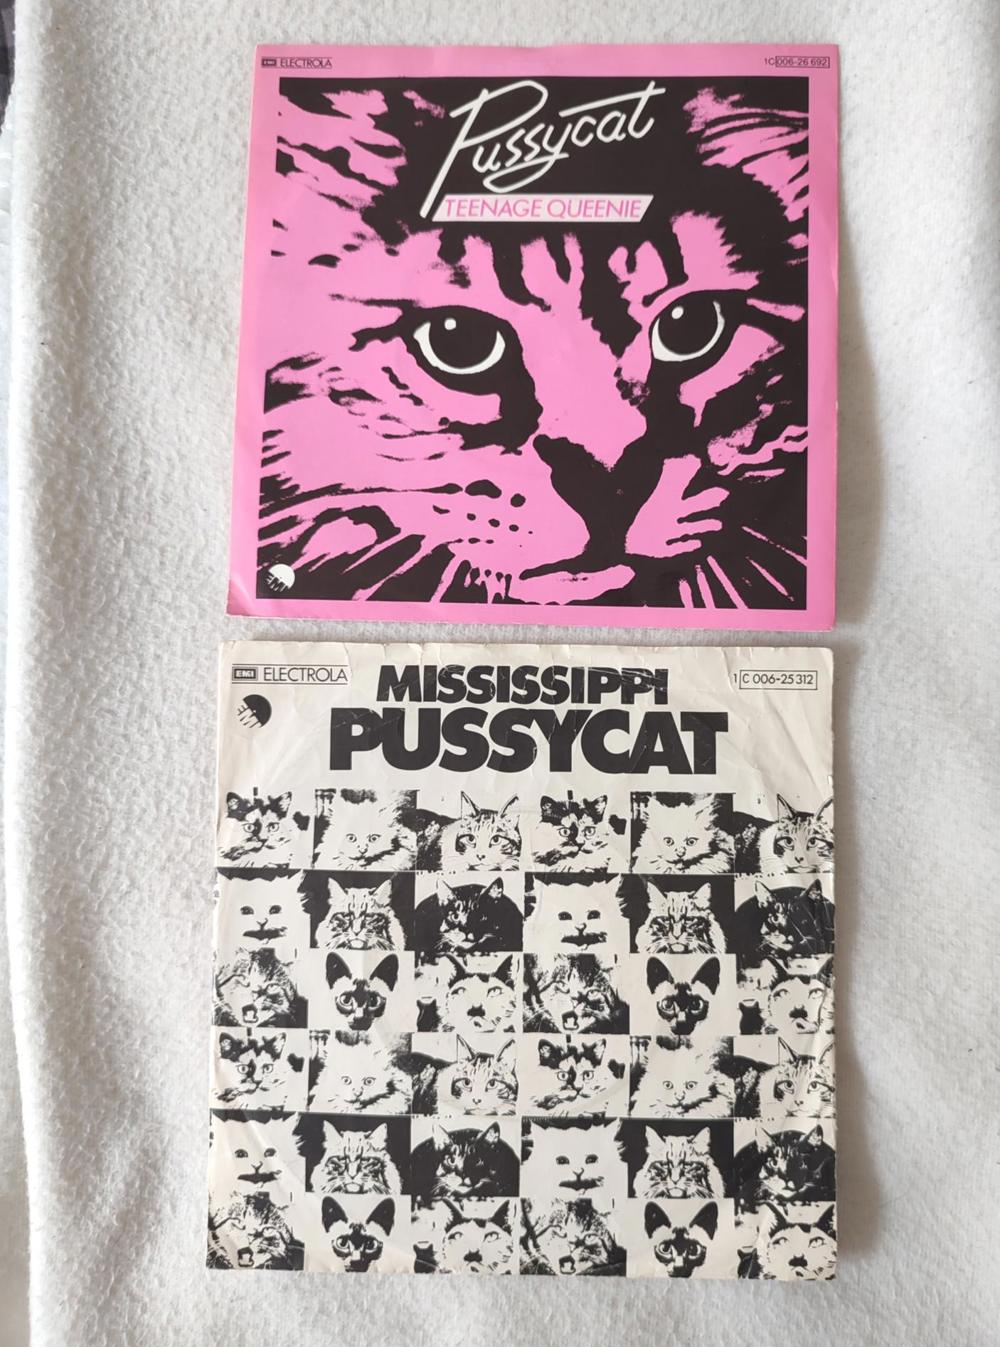 2 x 7' Vinyl Singles Lps Schallplatten Pussycat